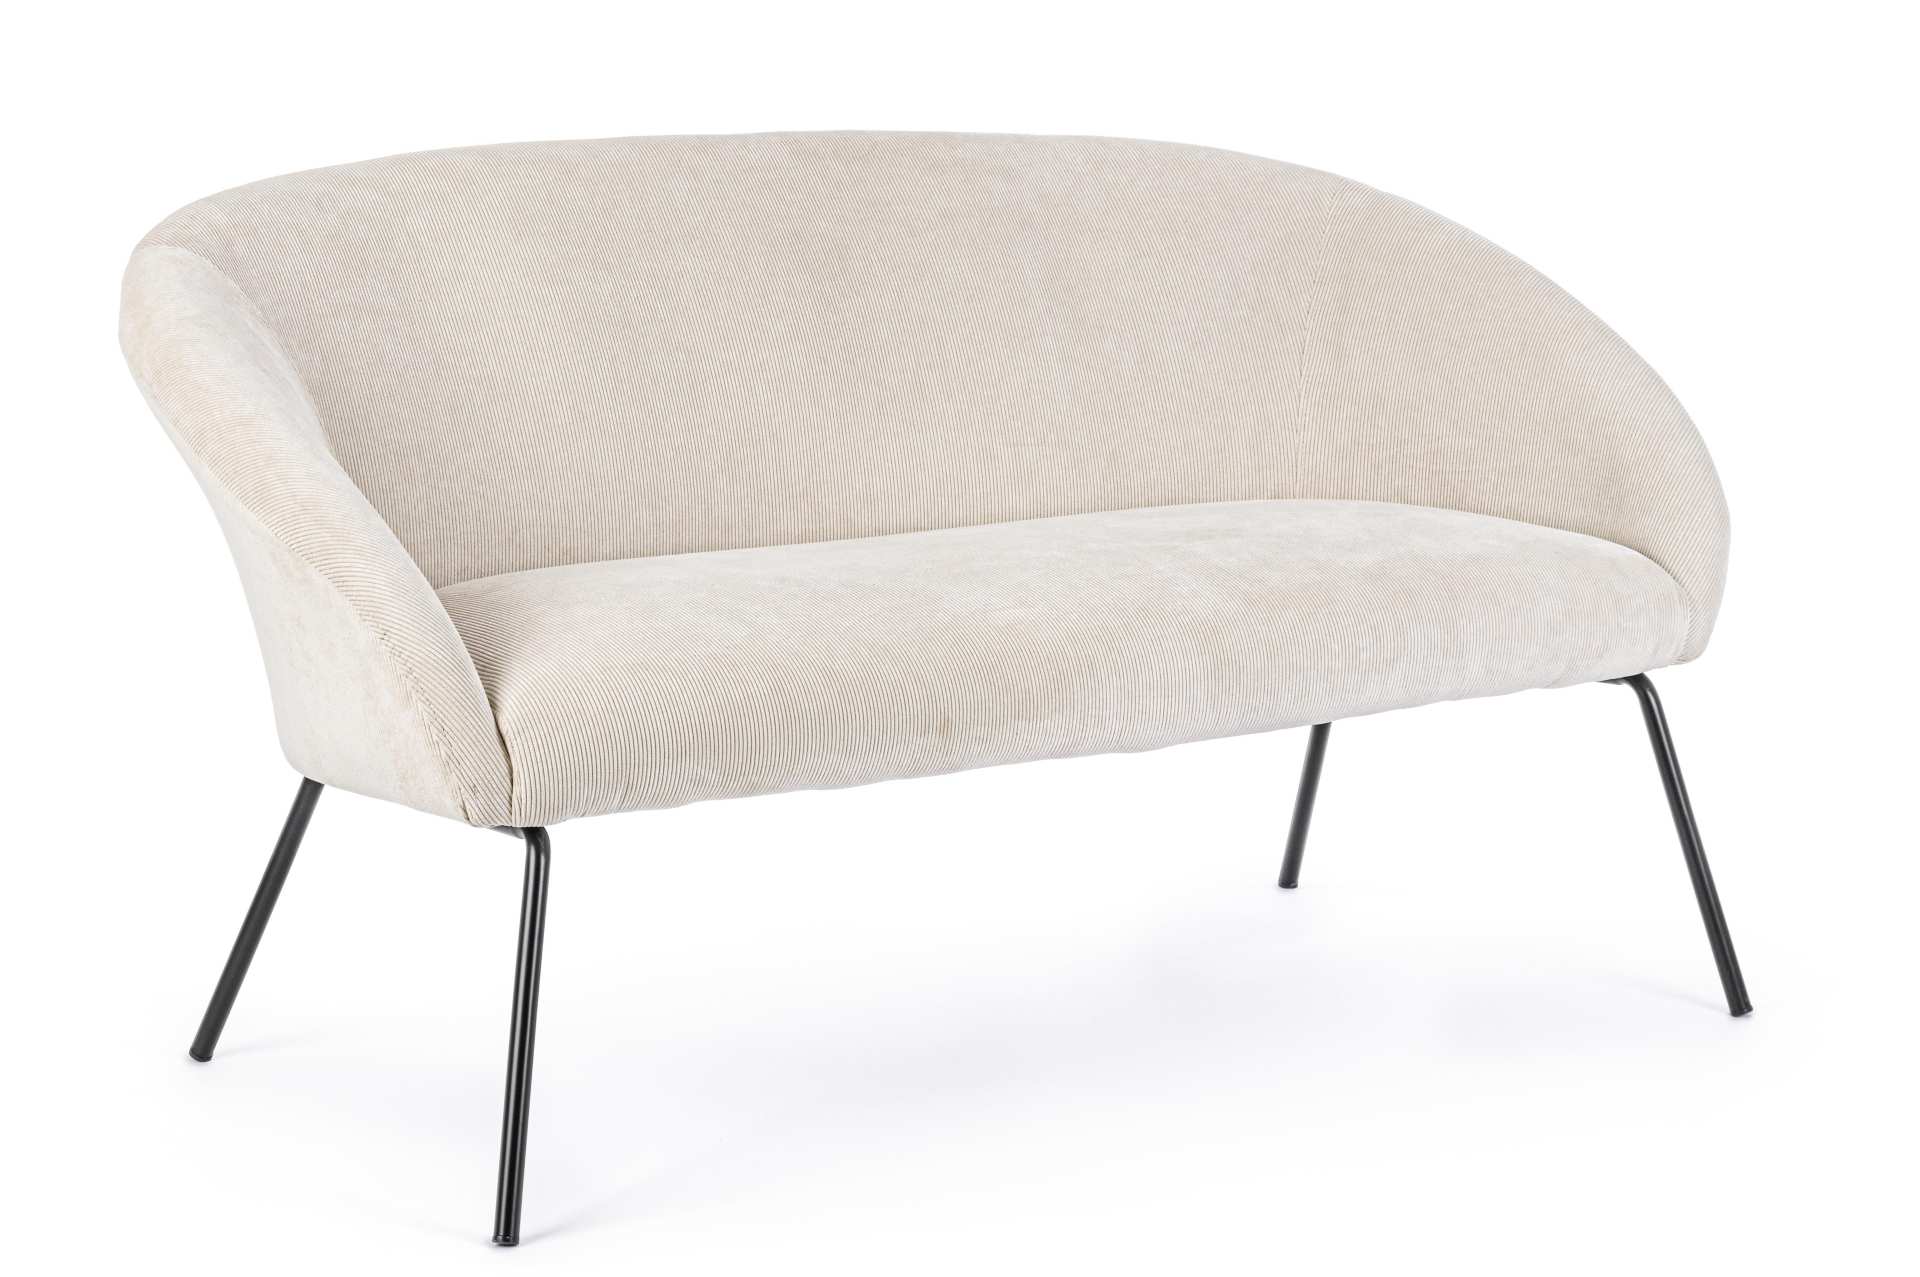 Das Sofa Aiko überzeugt mit seinem modernen Design. Gefertigt wurde es aus Stoff in Samt-Optik, welcher einen weißen Farbton besitzt. Das Gestell ist aus Metall und hat eine schwarze Farbe. Das Sofa ist in der Ausführung als 2-Sitzer. Die Breite beträgt 1